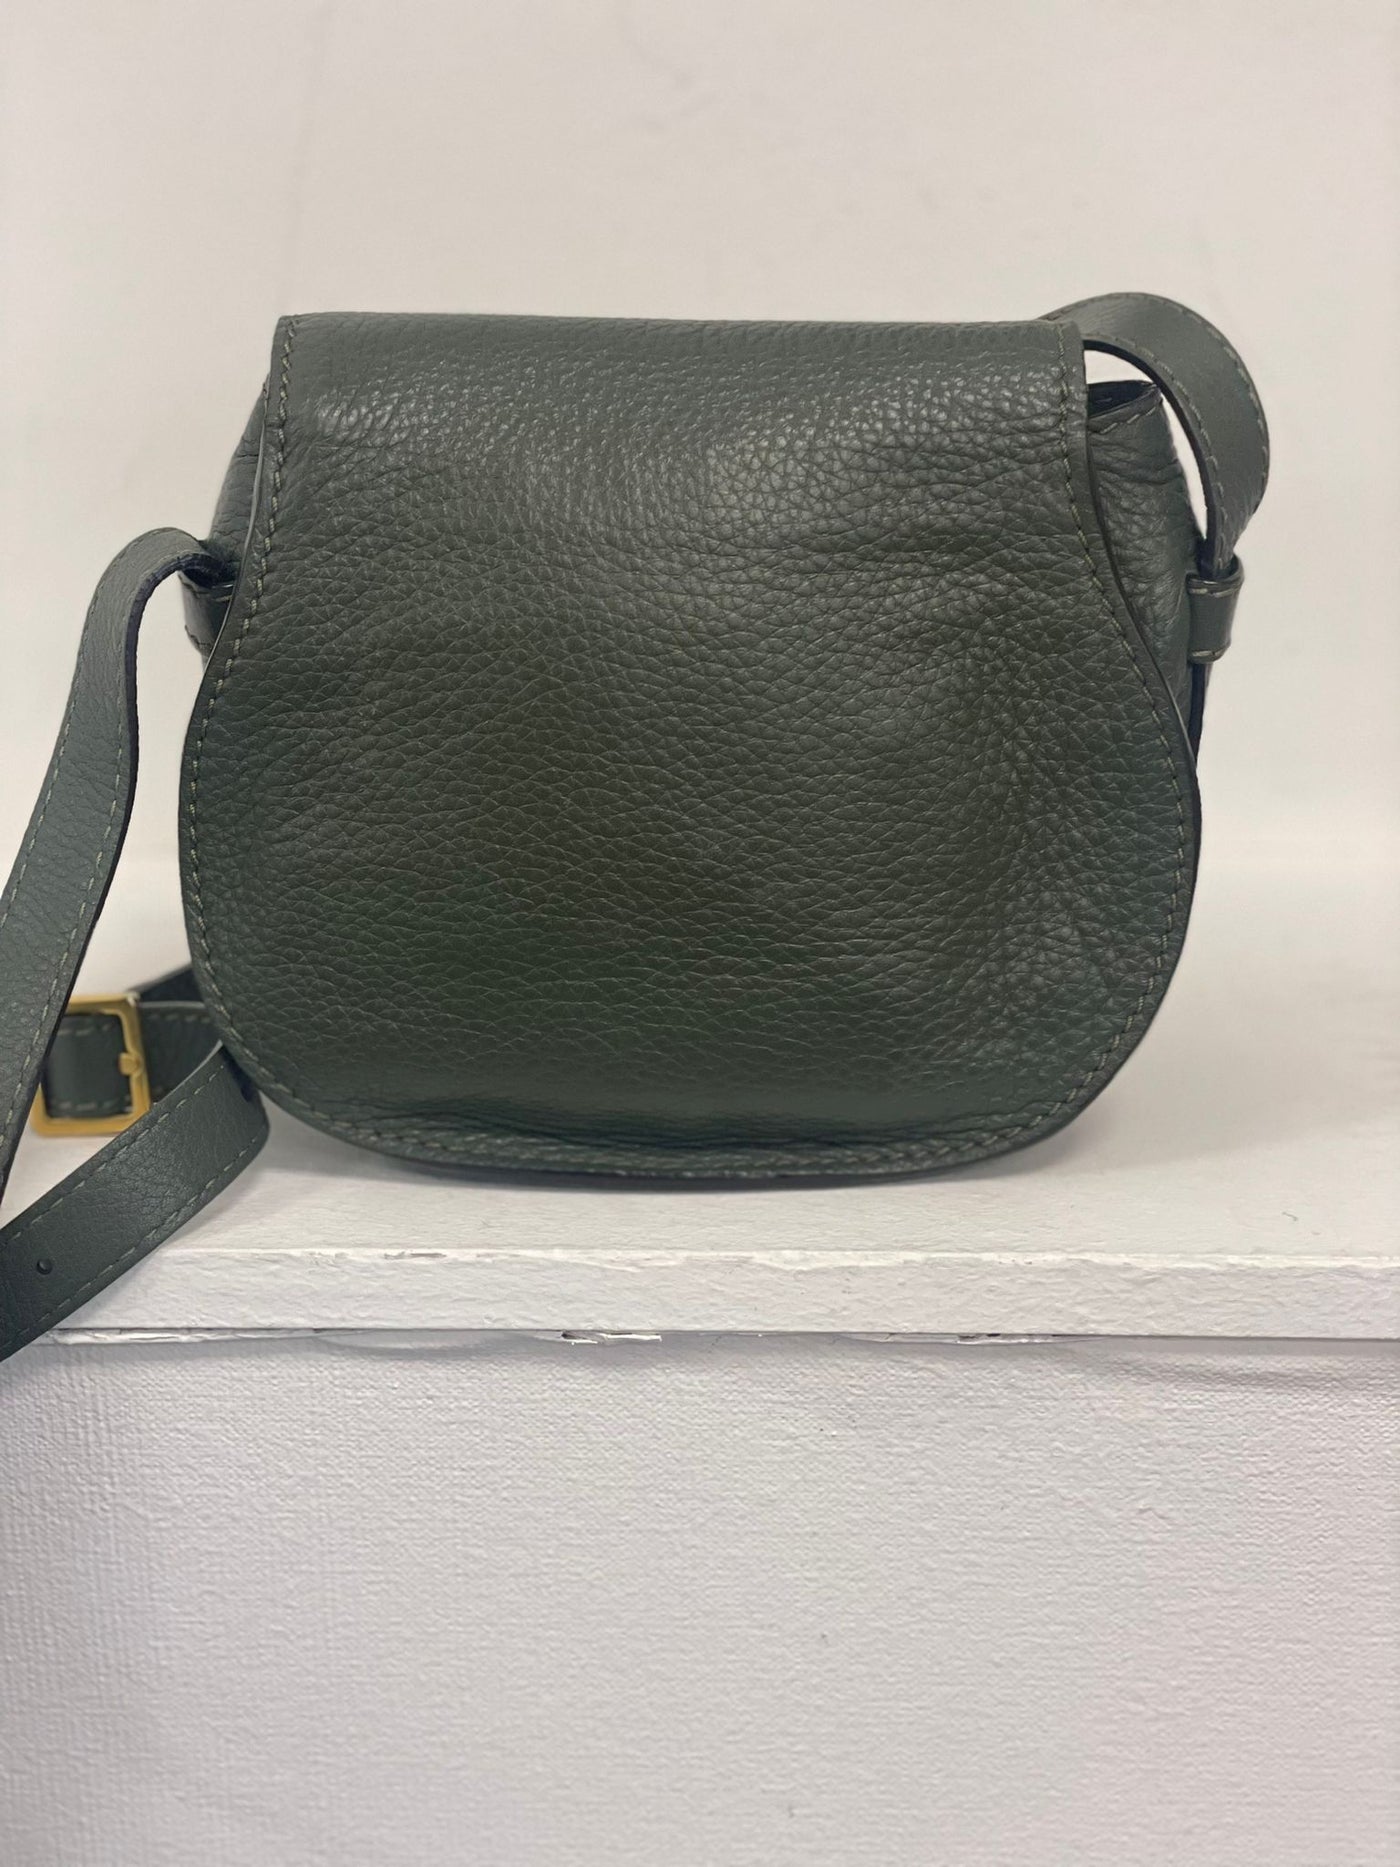 Chloe Marcie green crossbody handbag green RTP £550